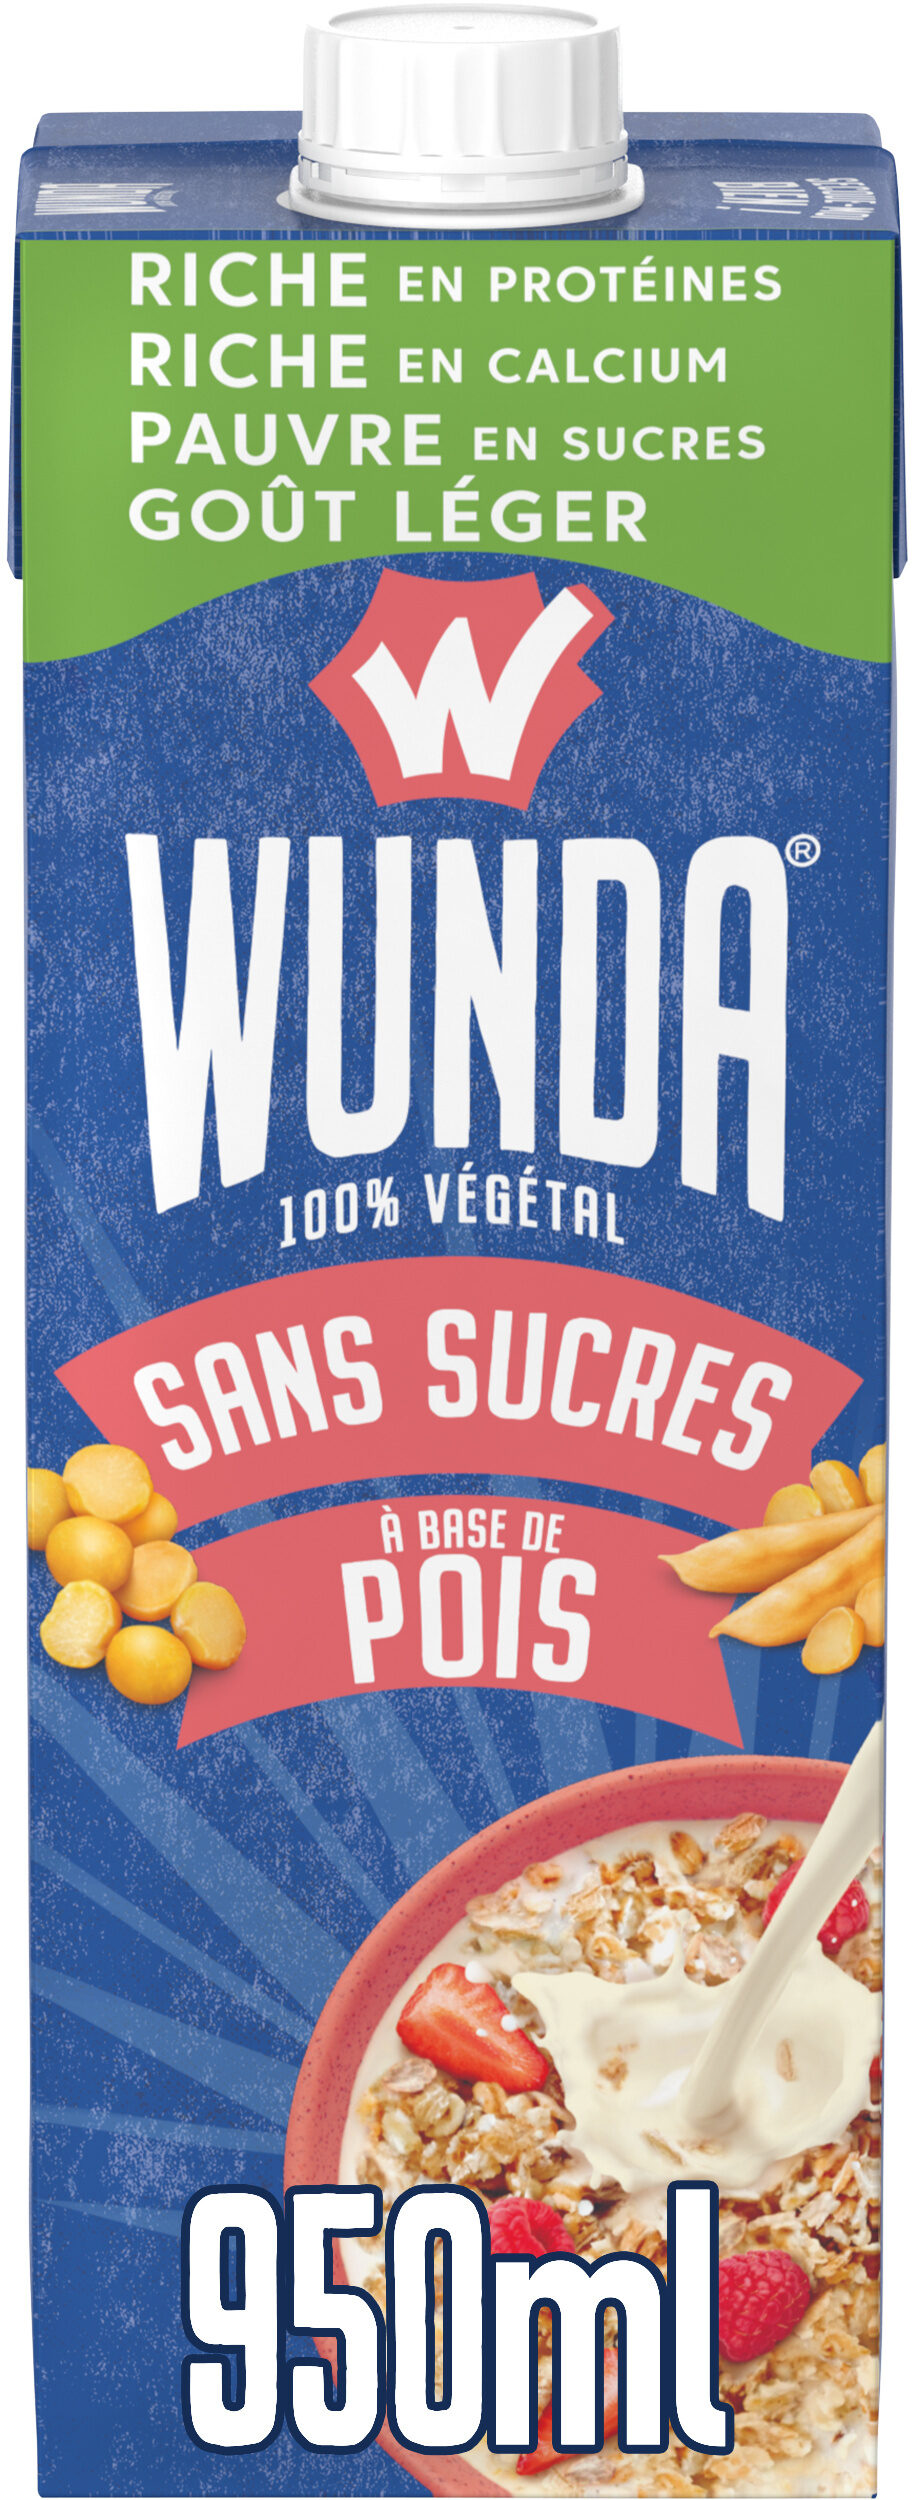 WUNDA Sans sucres 950ml - Prodotto - fr